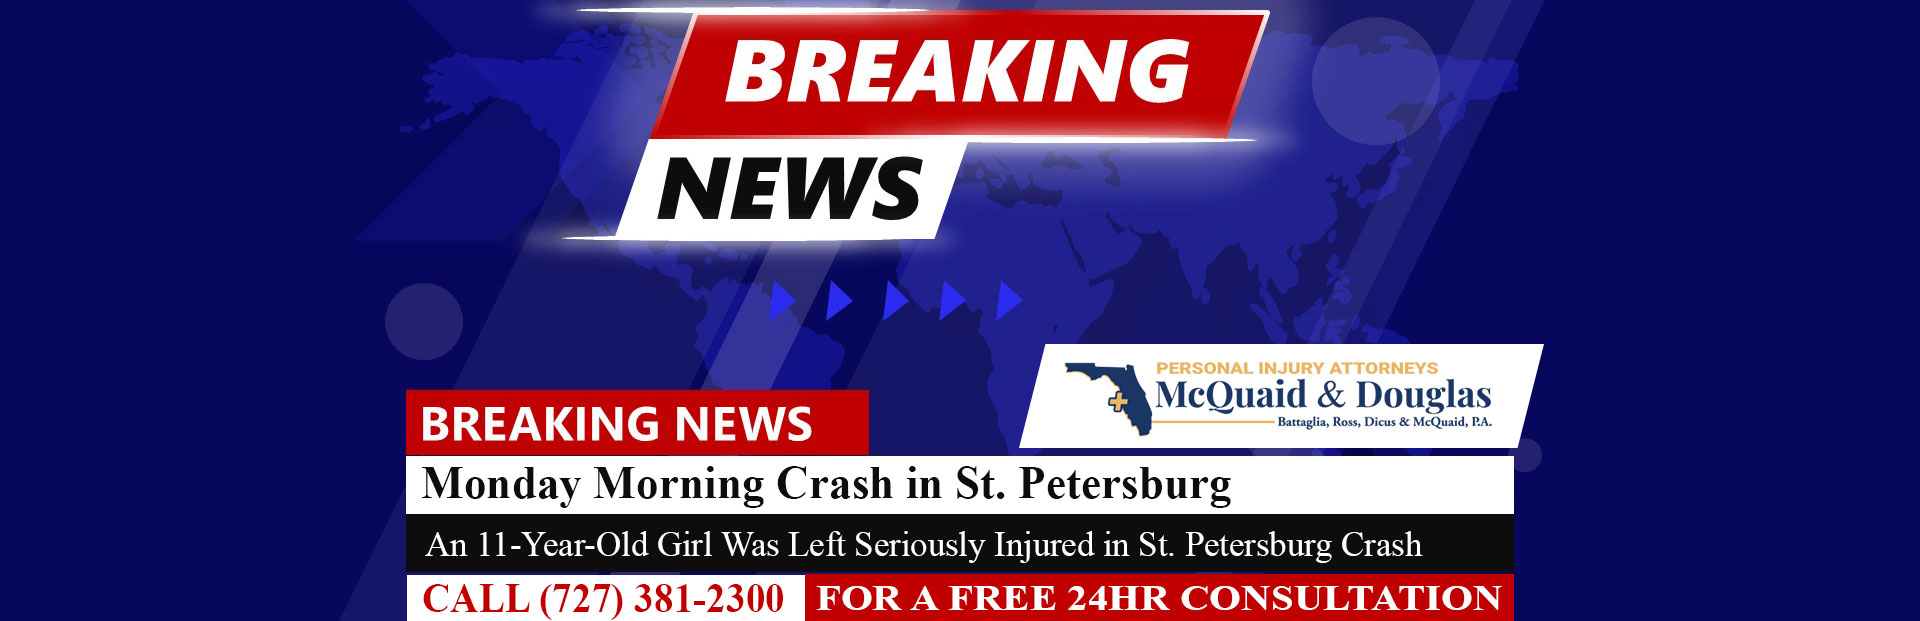 [04-15-24] Un accidente del lunes por la mañana en San Petersburgo deja a un niño de 11 años gravemente herido